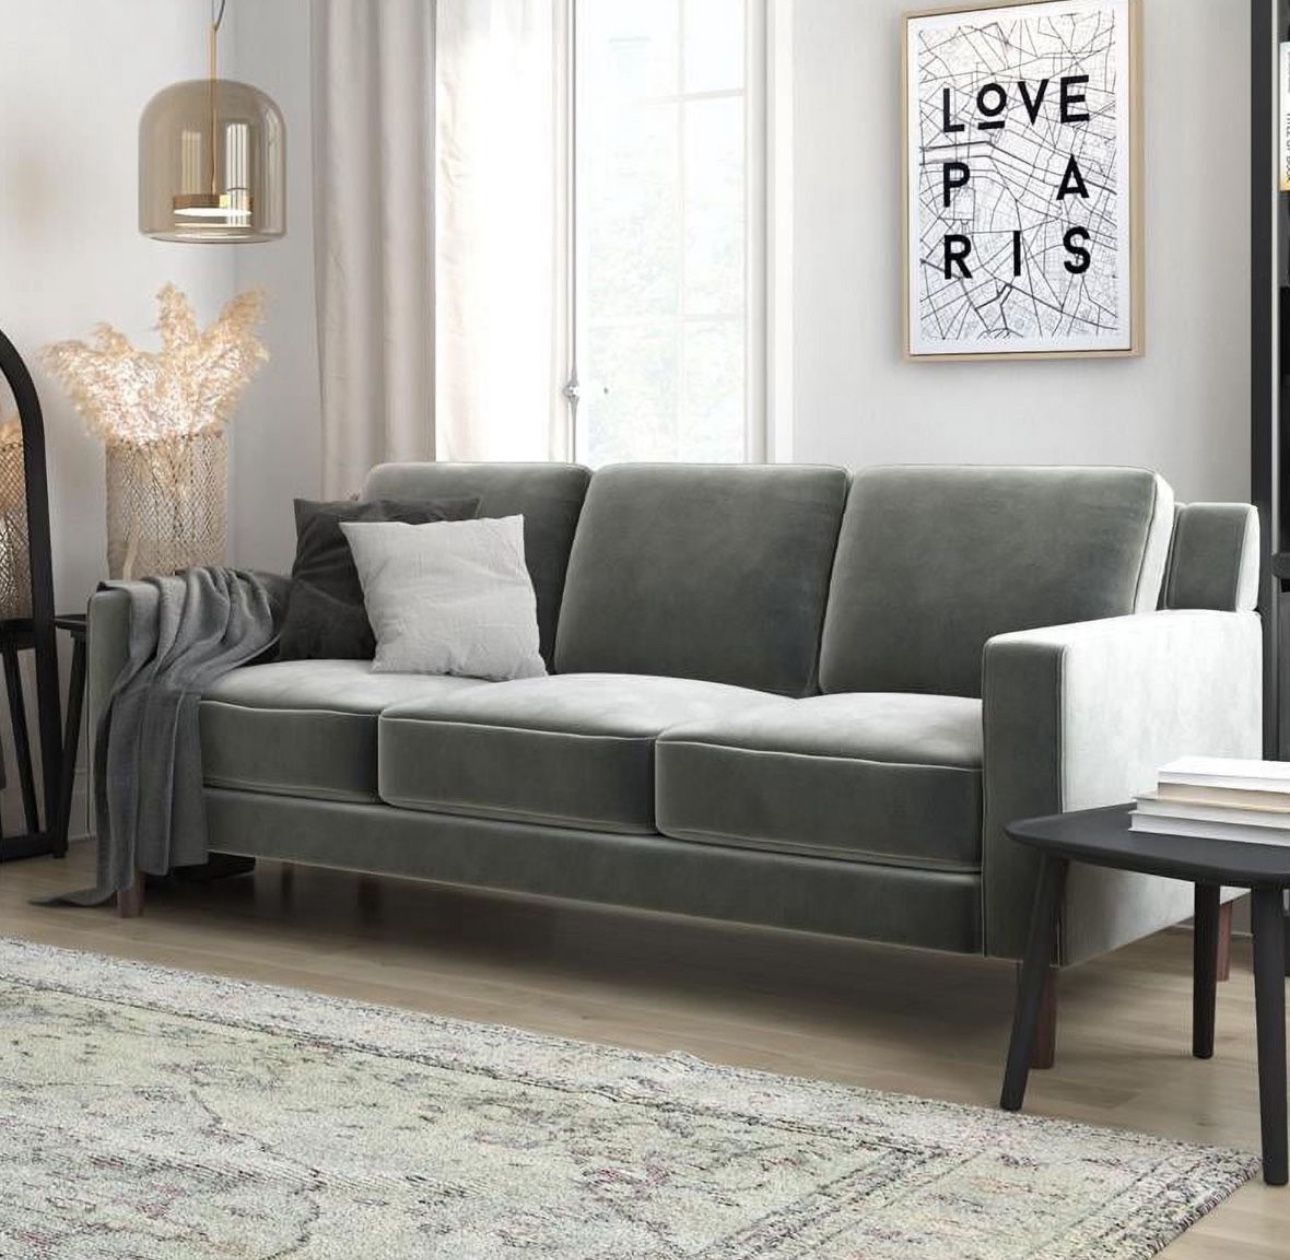 3 Seater Living Room Upholstered Sofa in Gray Velvet